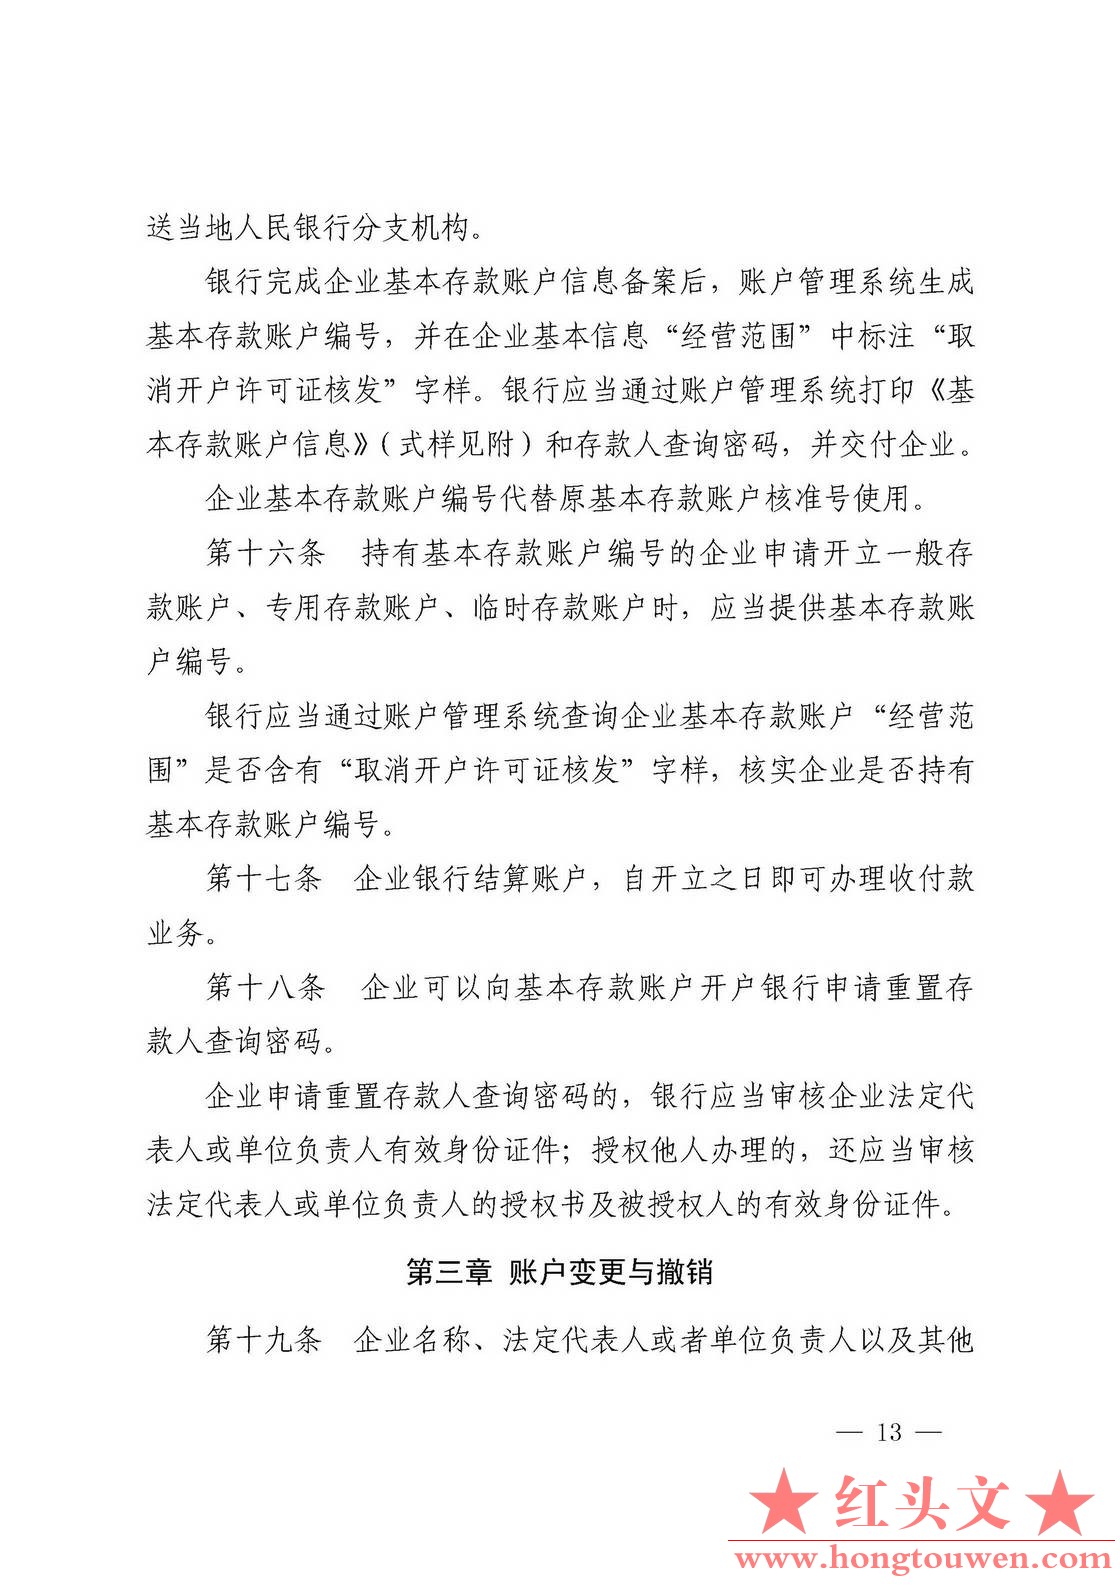 银发[2019]41号-中国人民银行关于取消企业银行账户许可的通知_页面_13.jpg.jpg